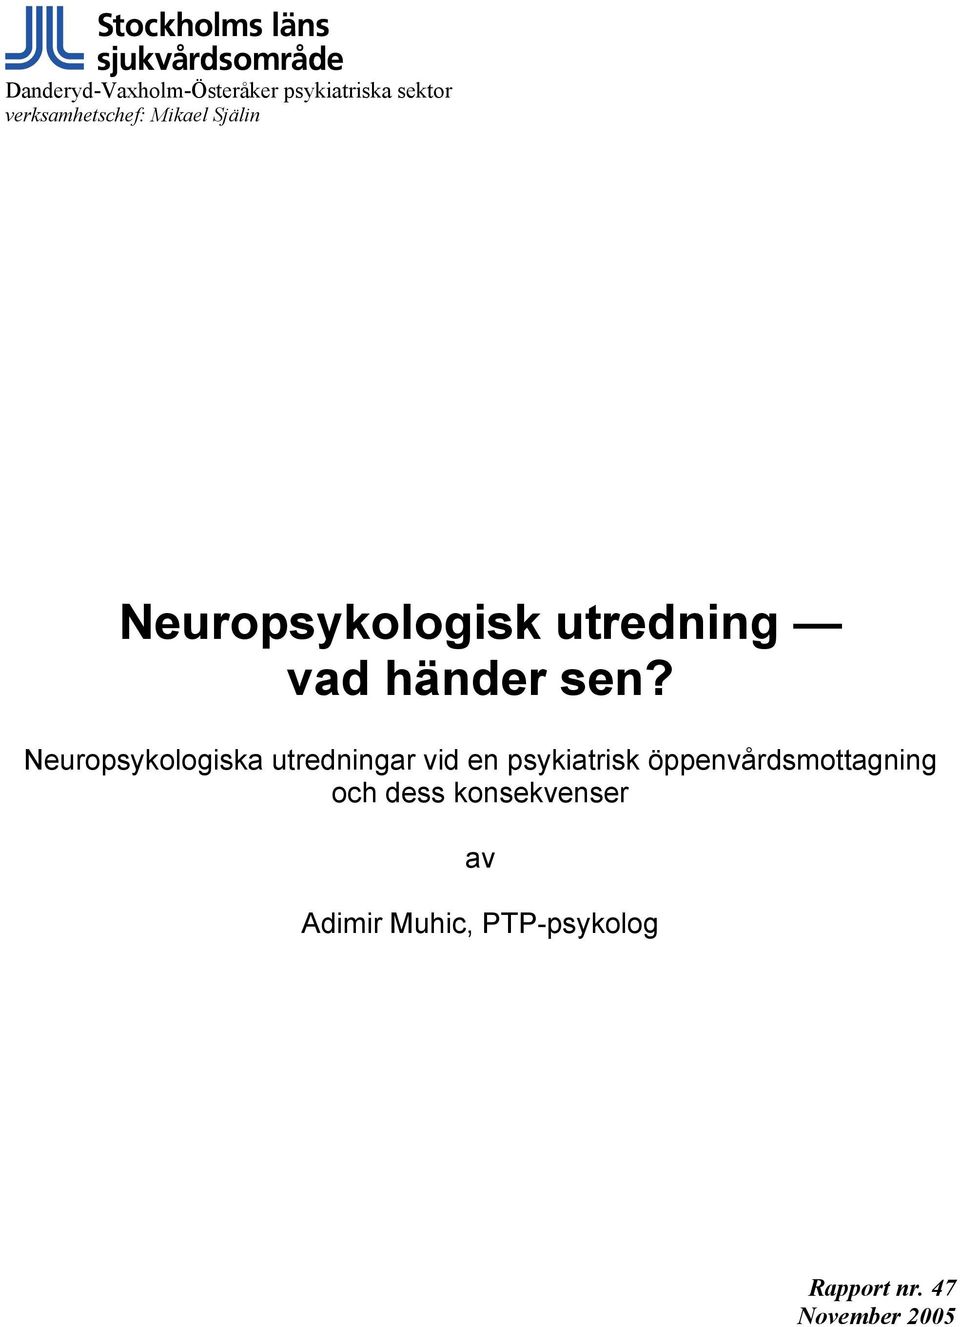 Neuropsykologiska utredningar vid en psykiatrisk